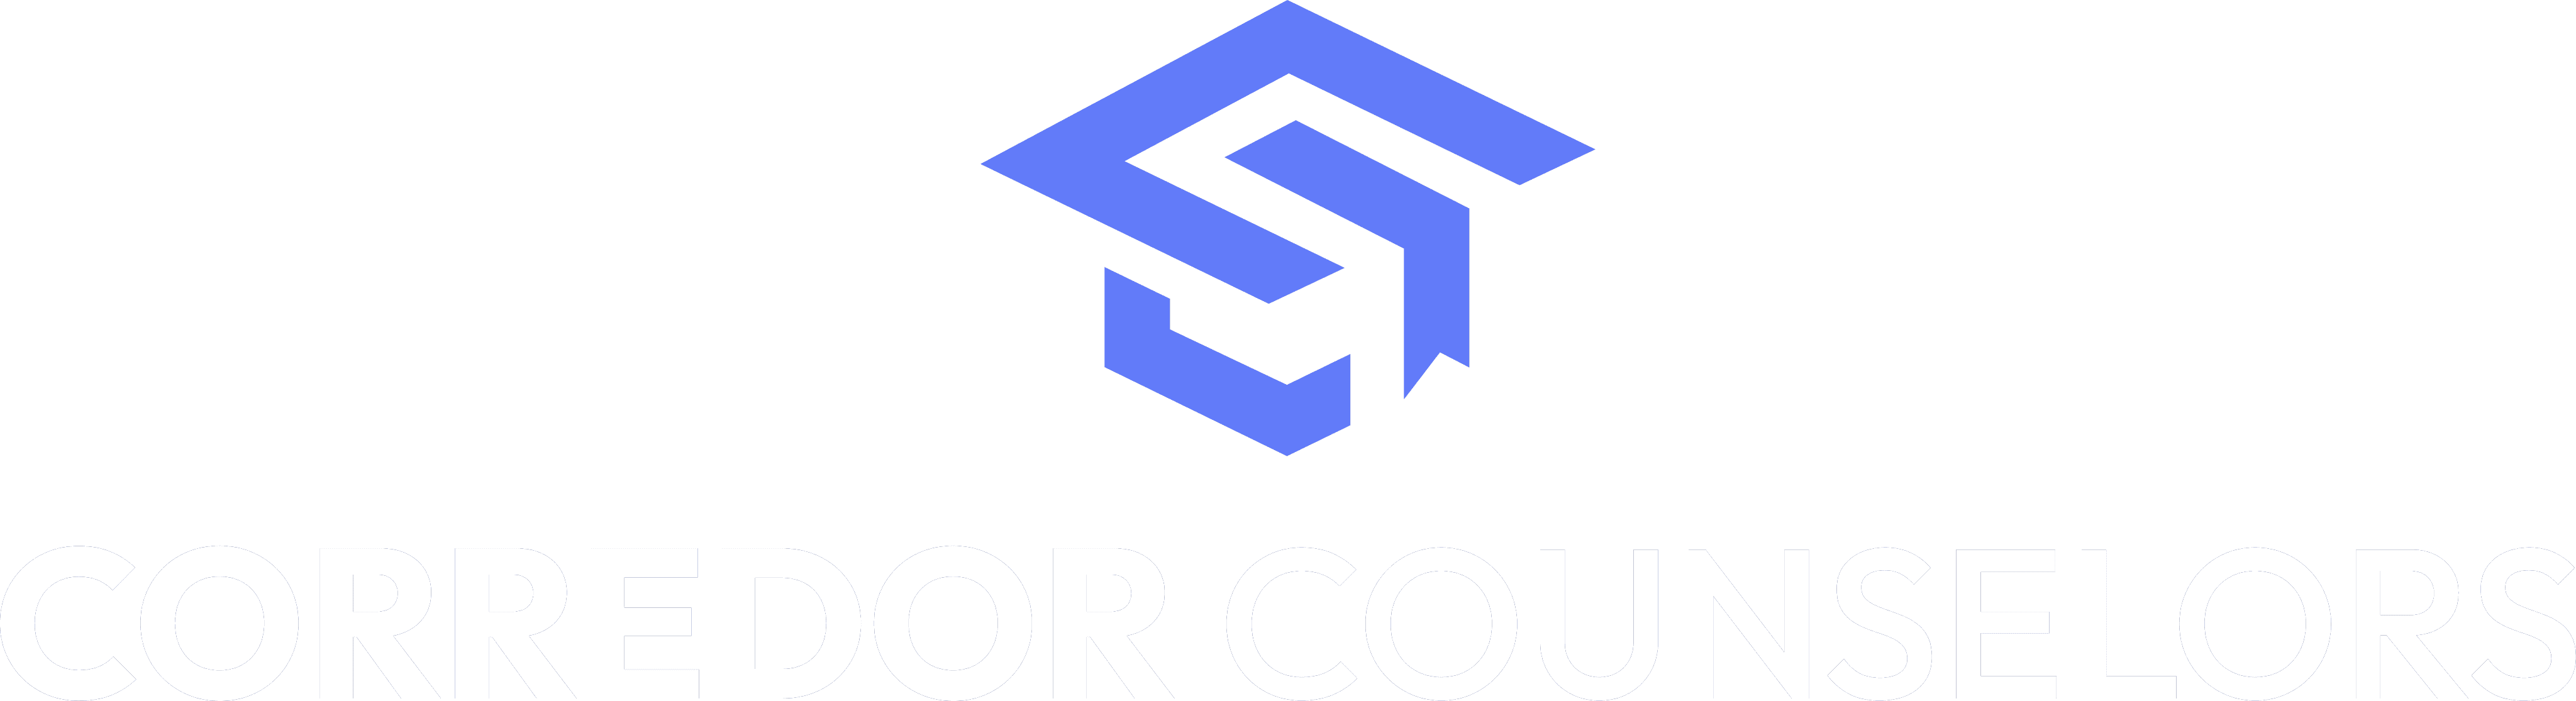 Corredor Counselor Logo big